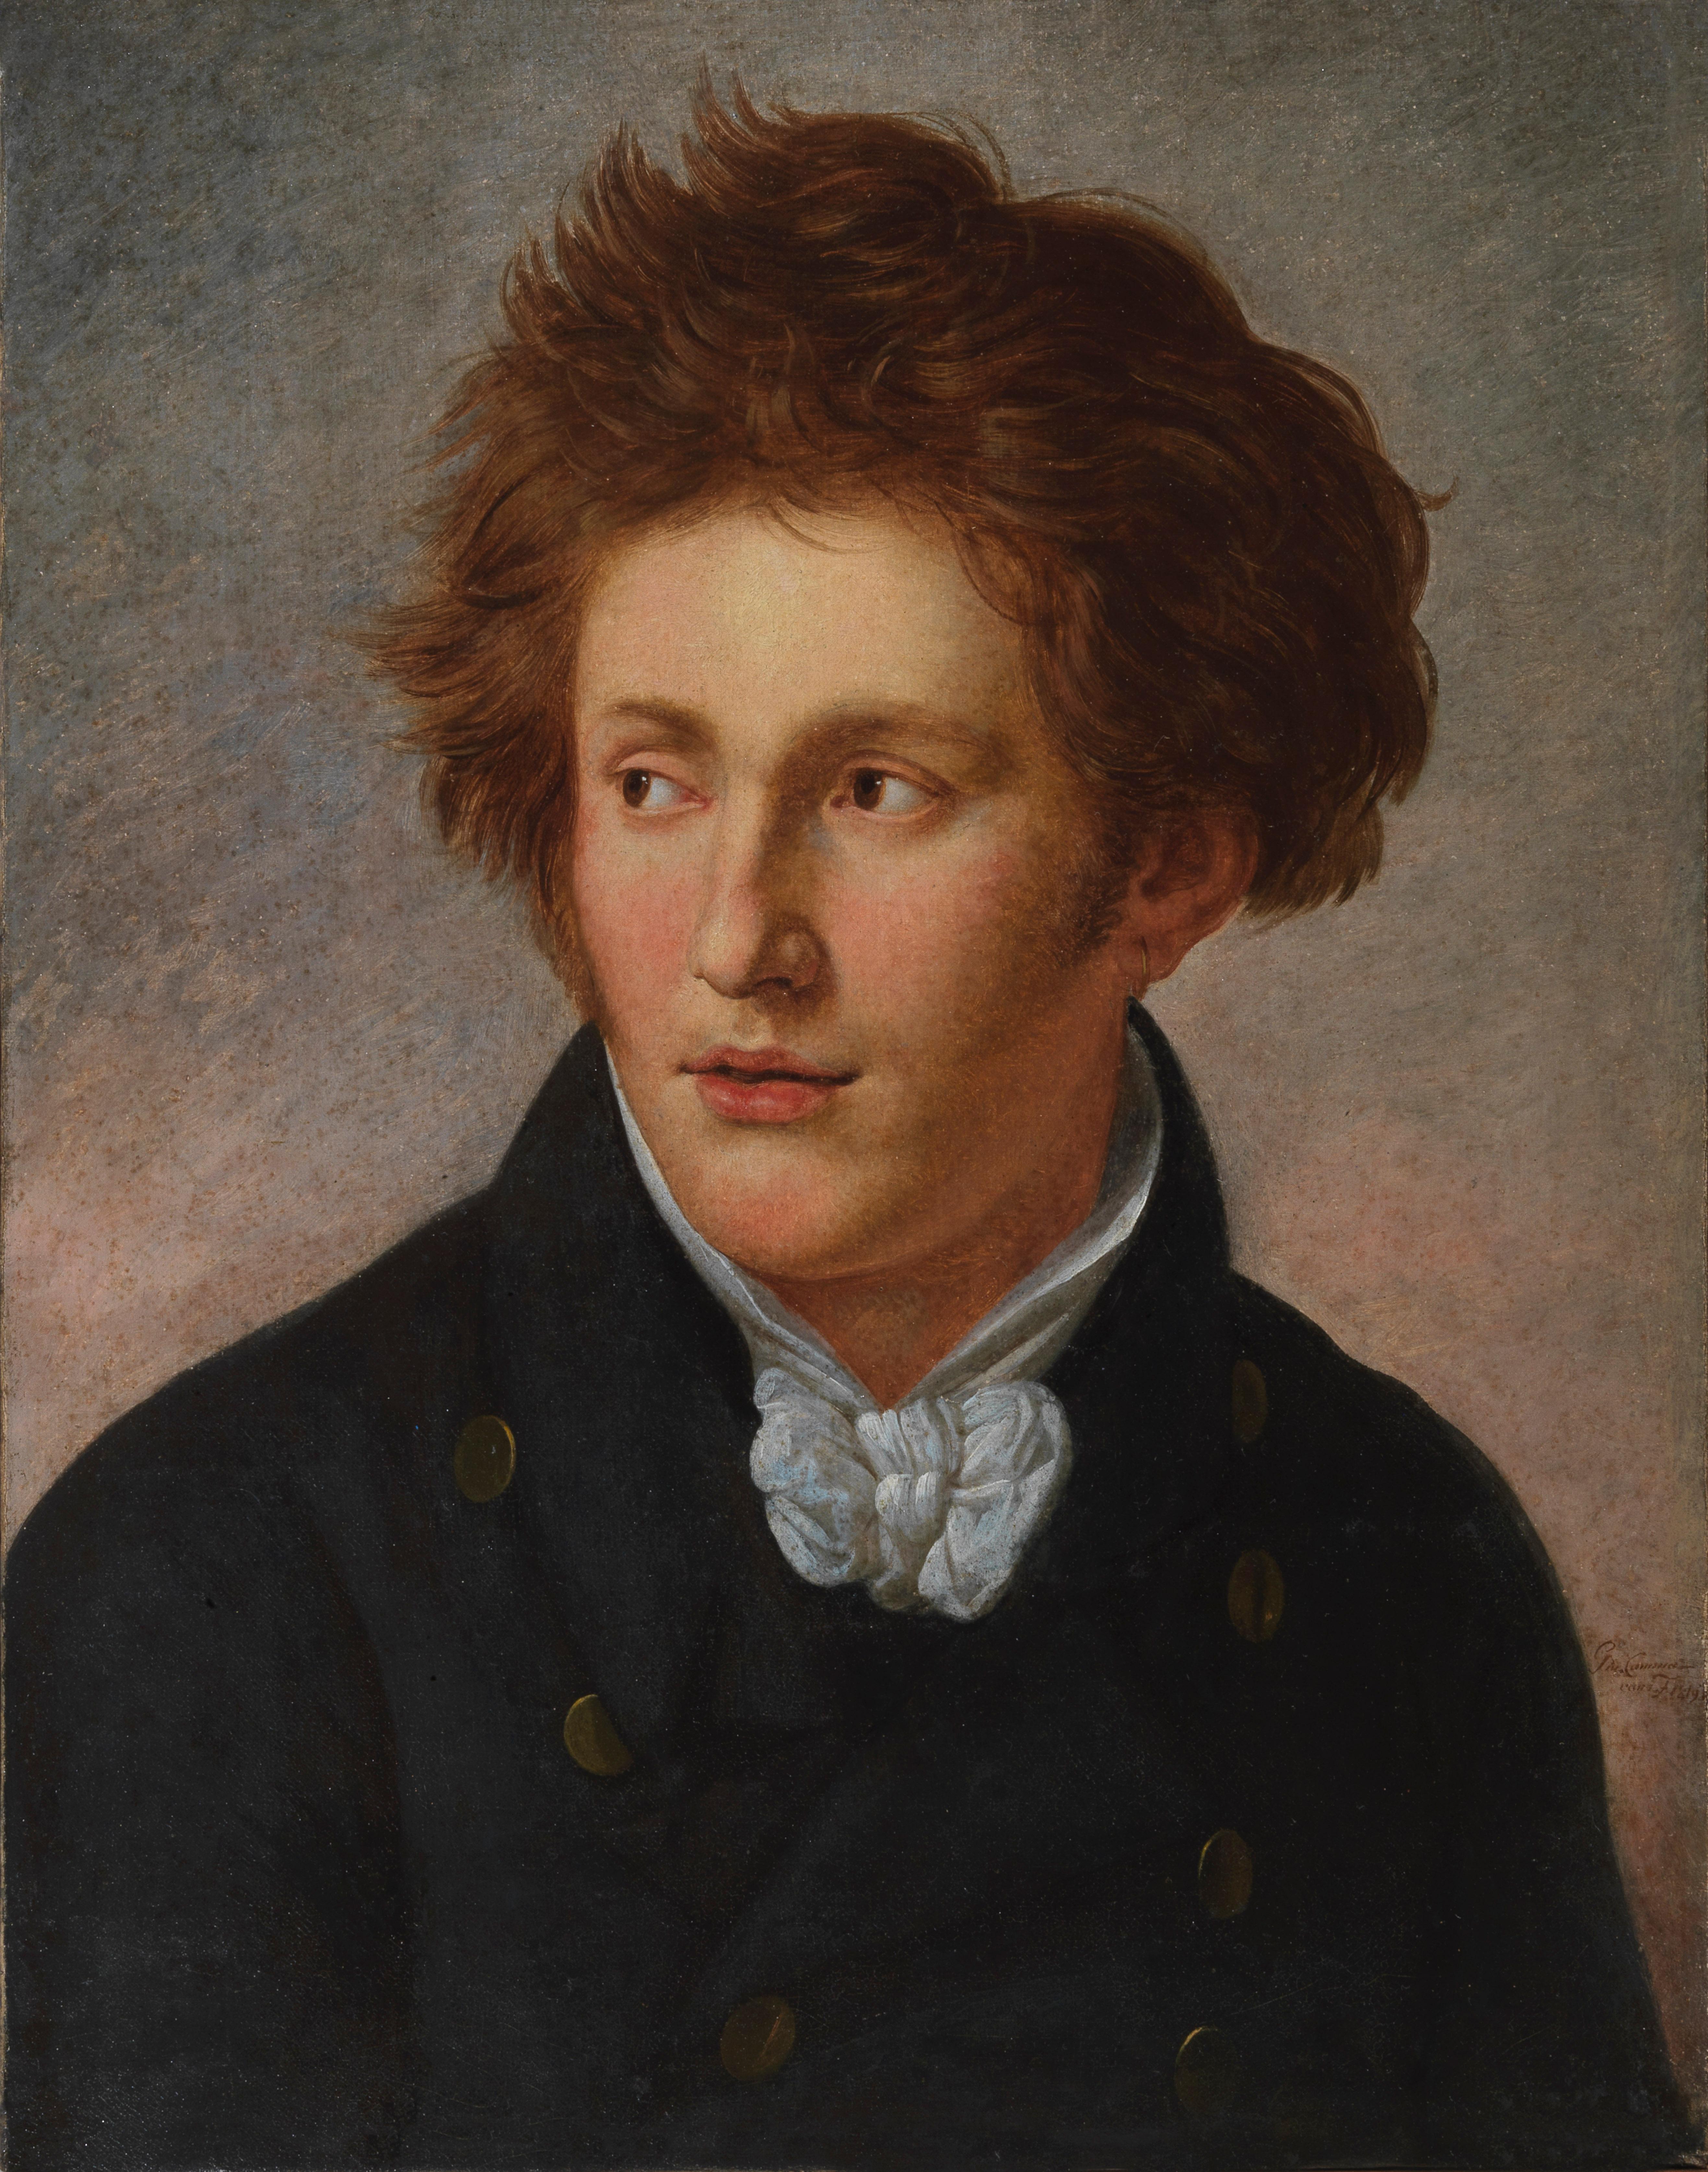 Portrait Painting Giuseppe Cammarano - Portrait de Vincenzo Bellini 